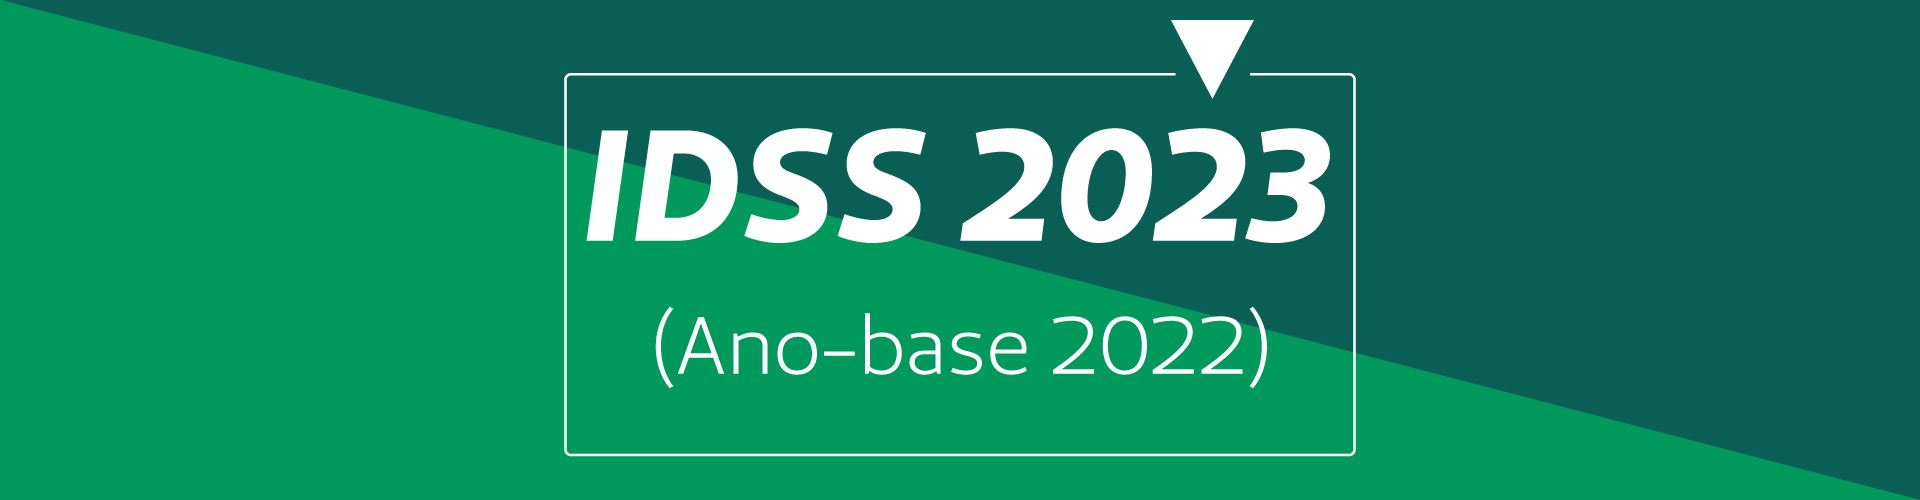 Índice de Desempenho da Saúde Suplementar 2023 (ano-base 2022)